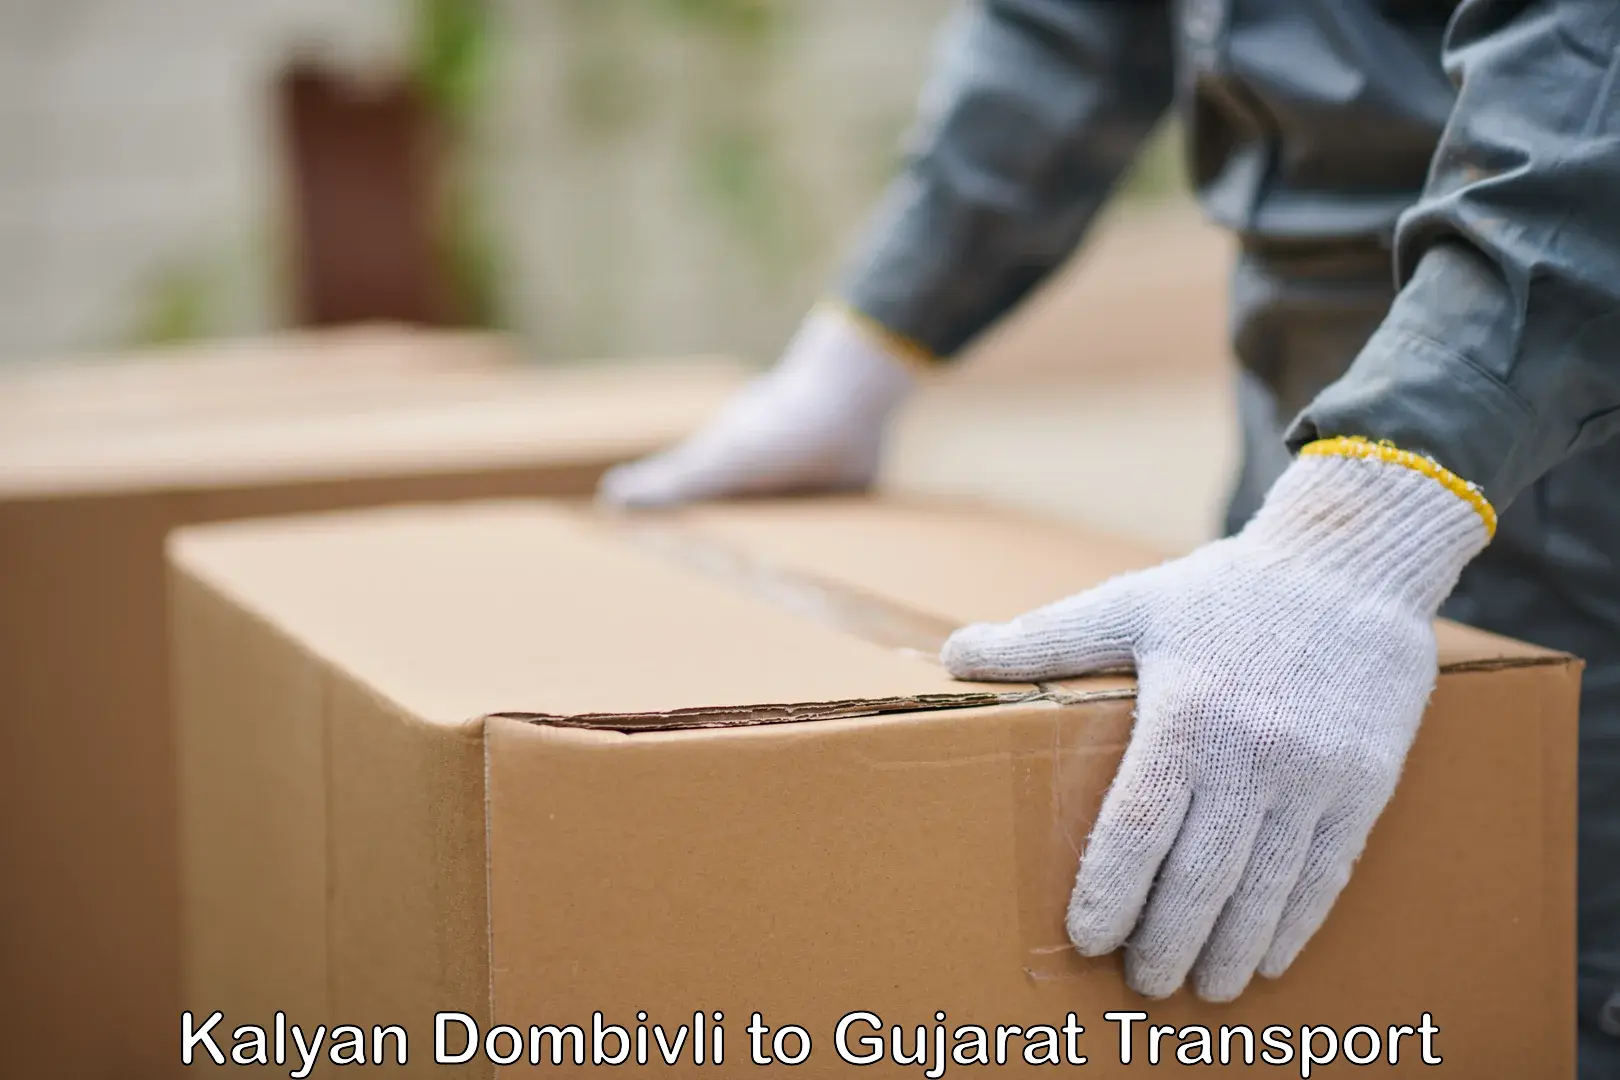 Nearby transport service Kalyan Dombivli to Gujarat